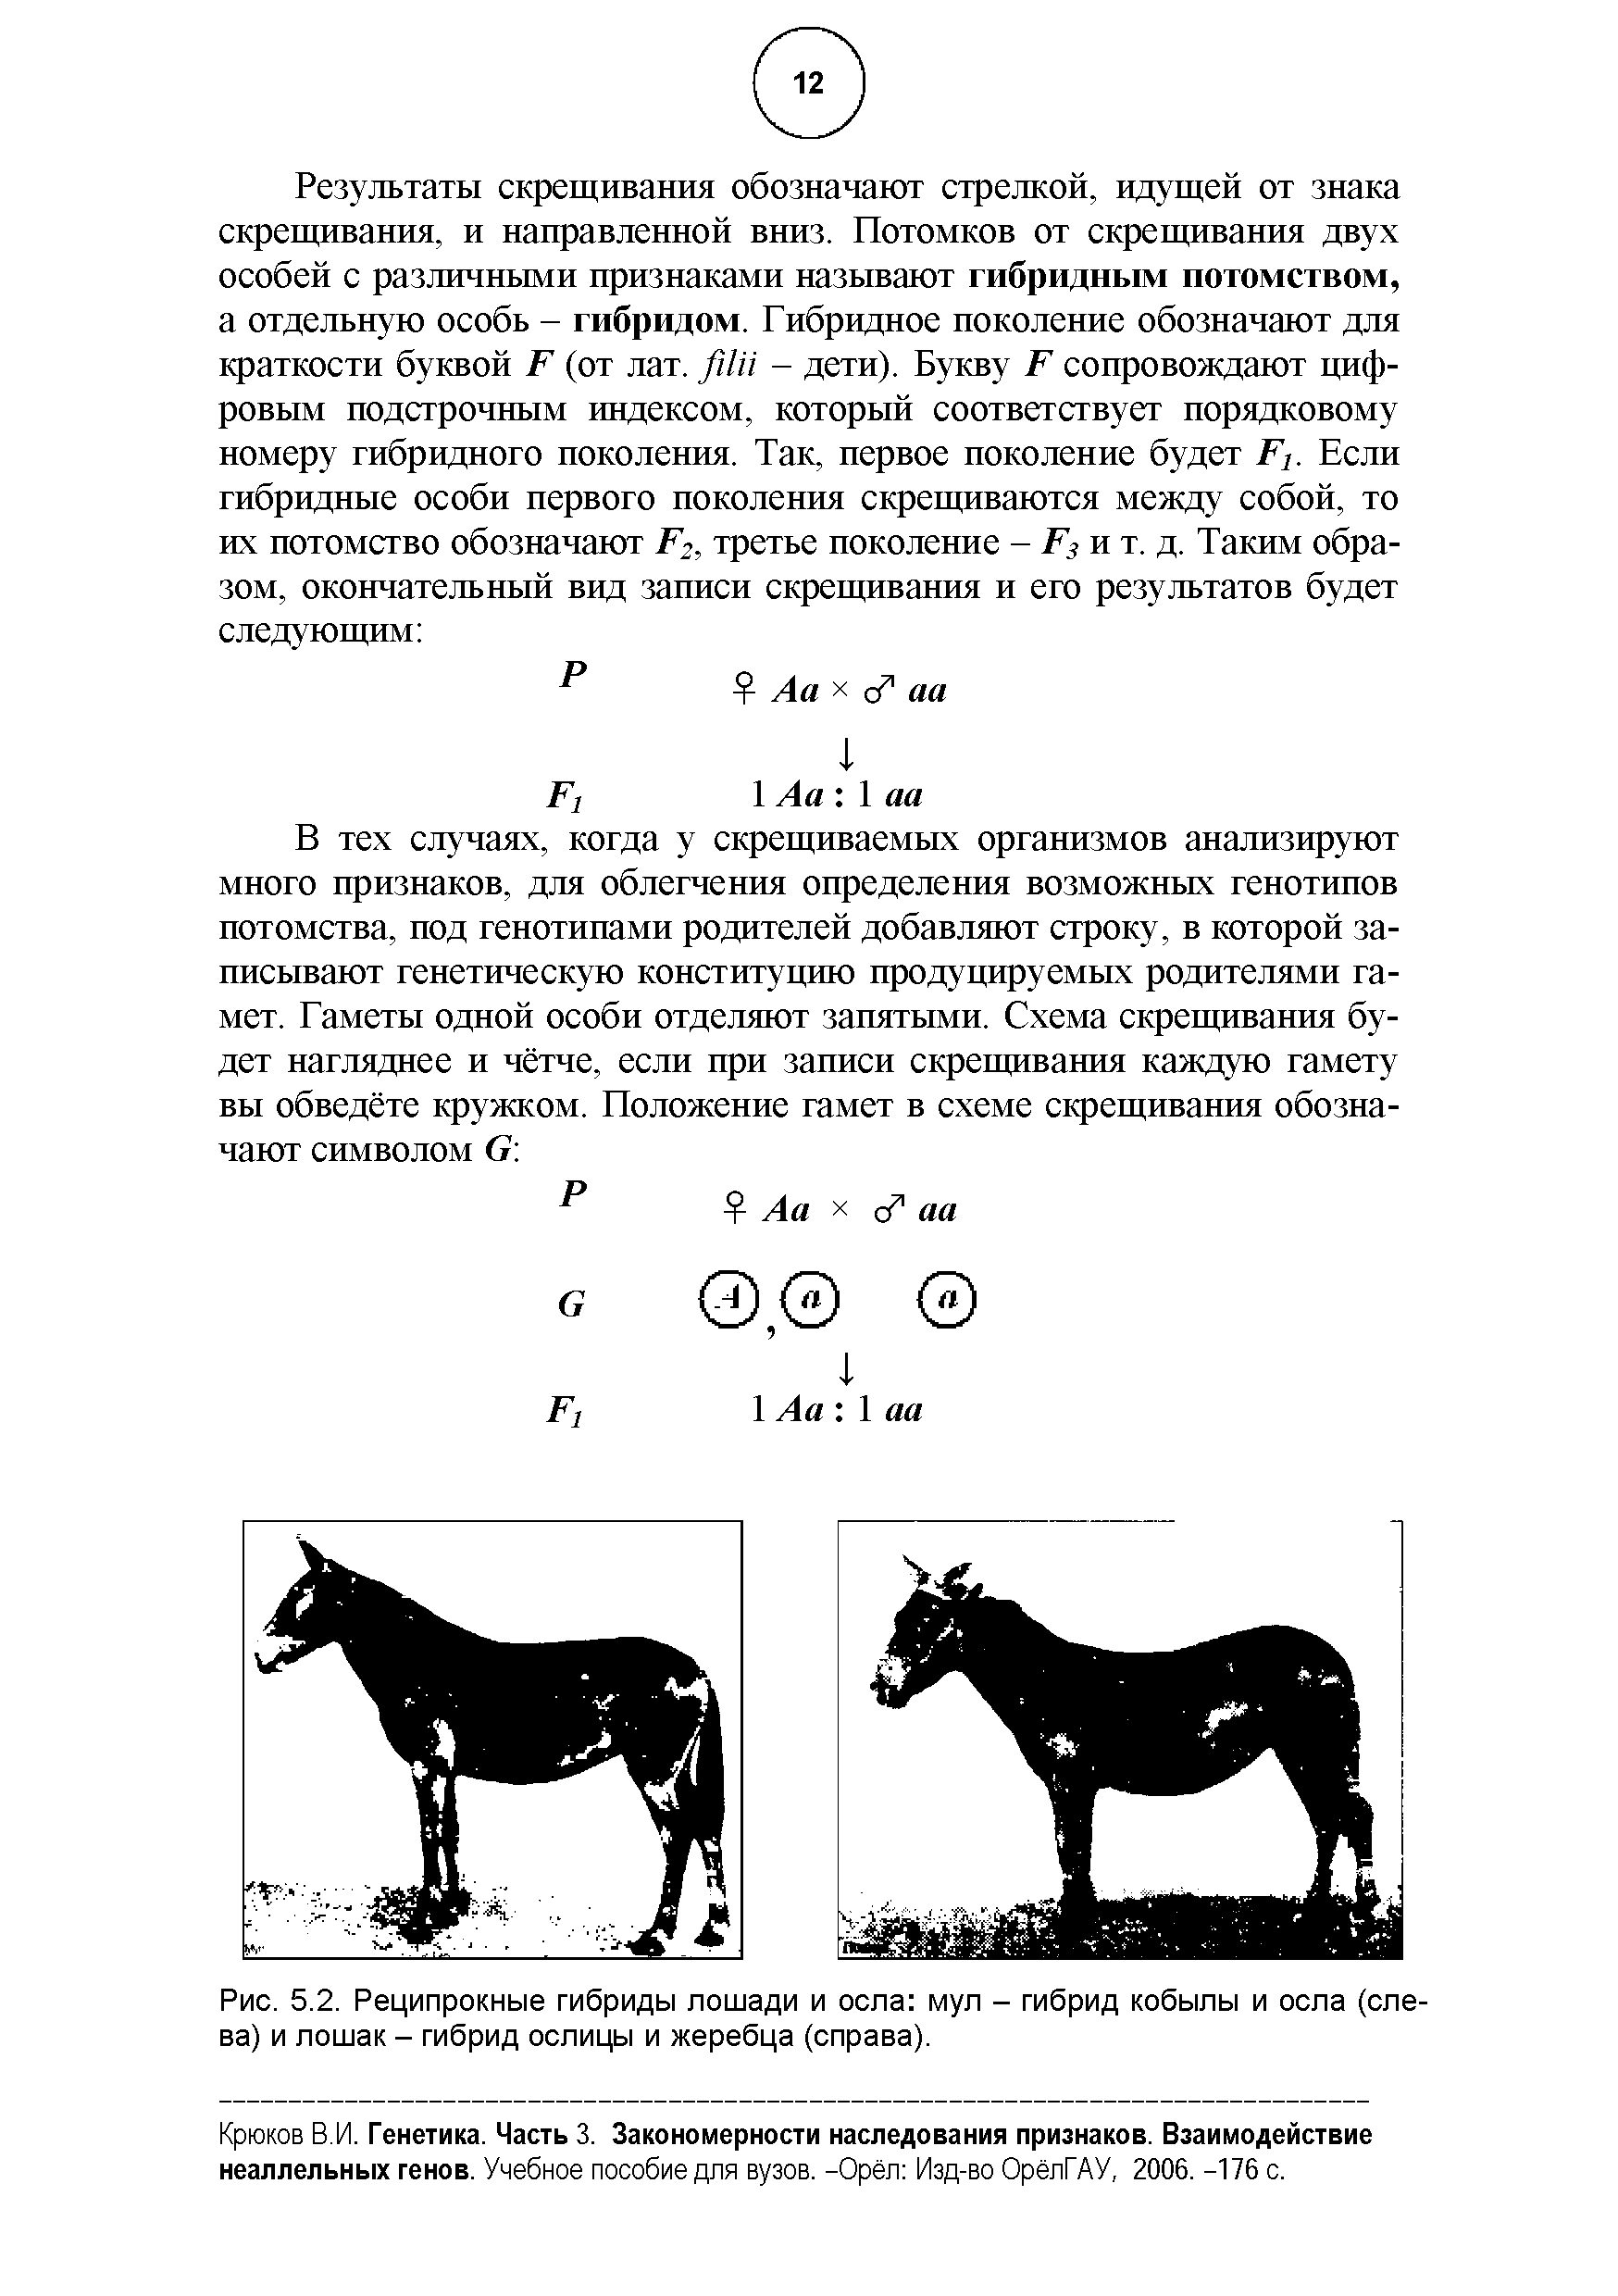 Рис. 5.2. Реципрокные гибриды лошади и осла мул - гибрид кобылы и осла (слева) и лошак - гибрид ослицы и жеребца (справа).